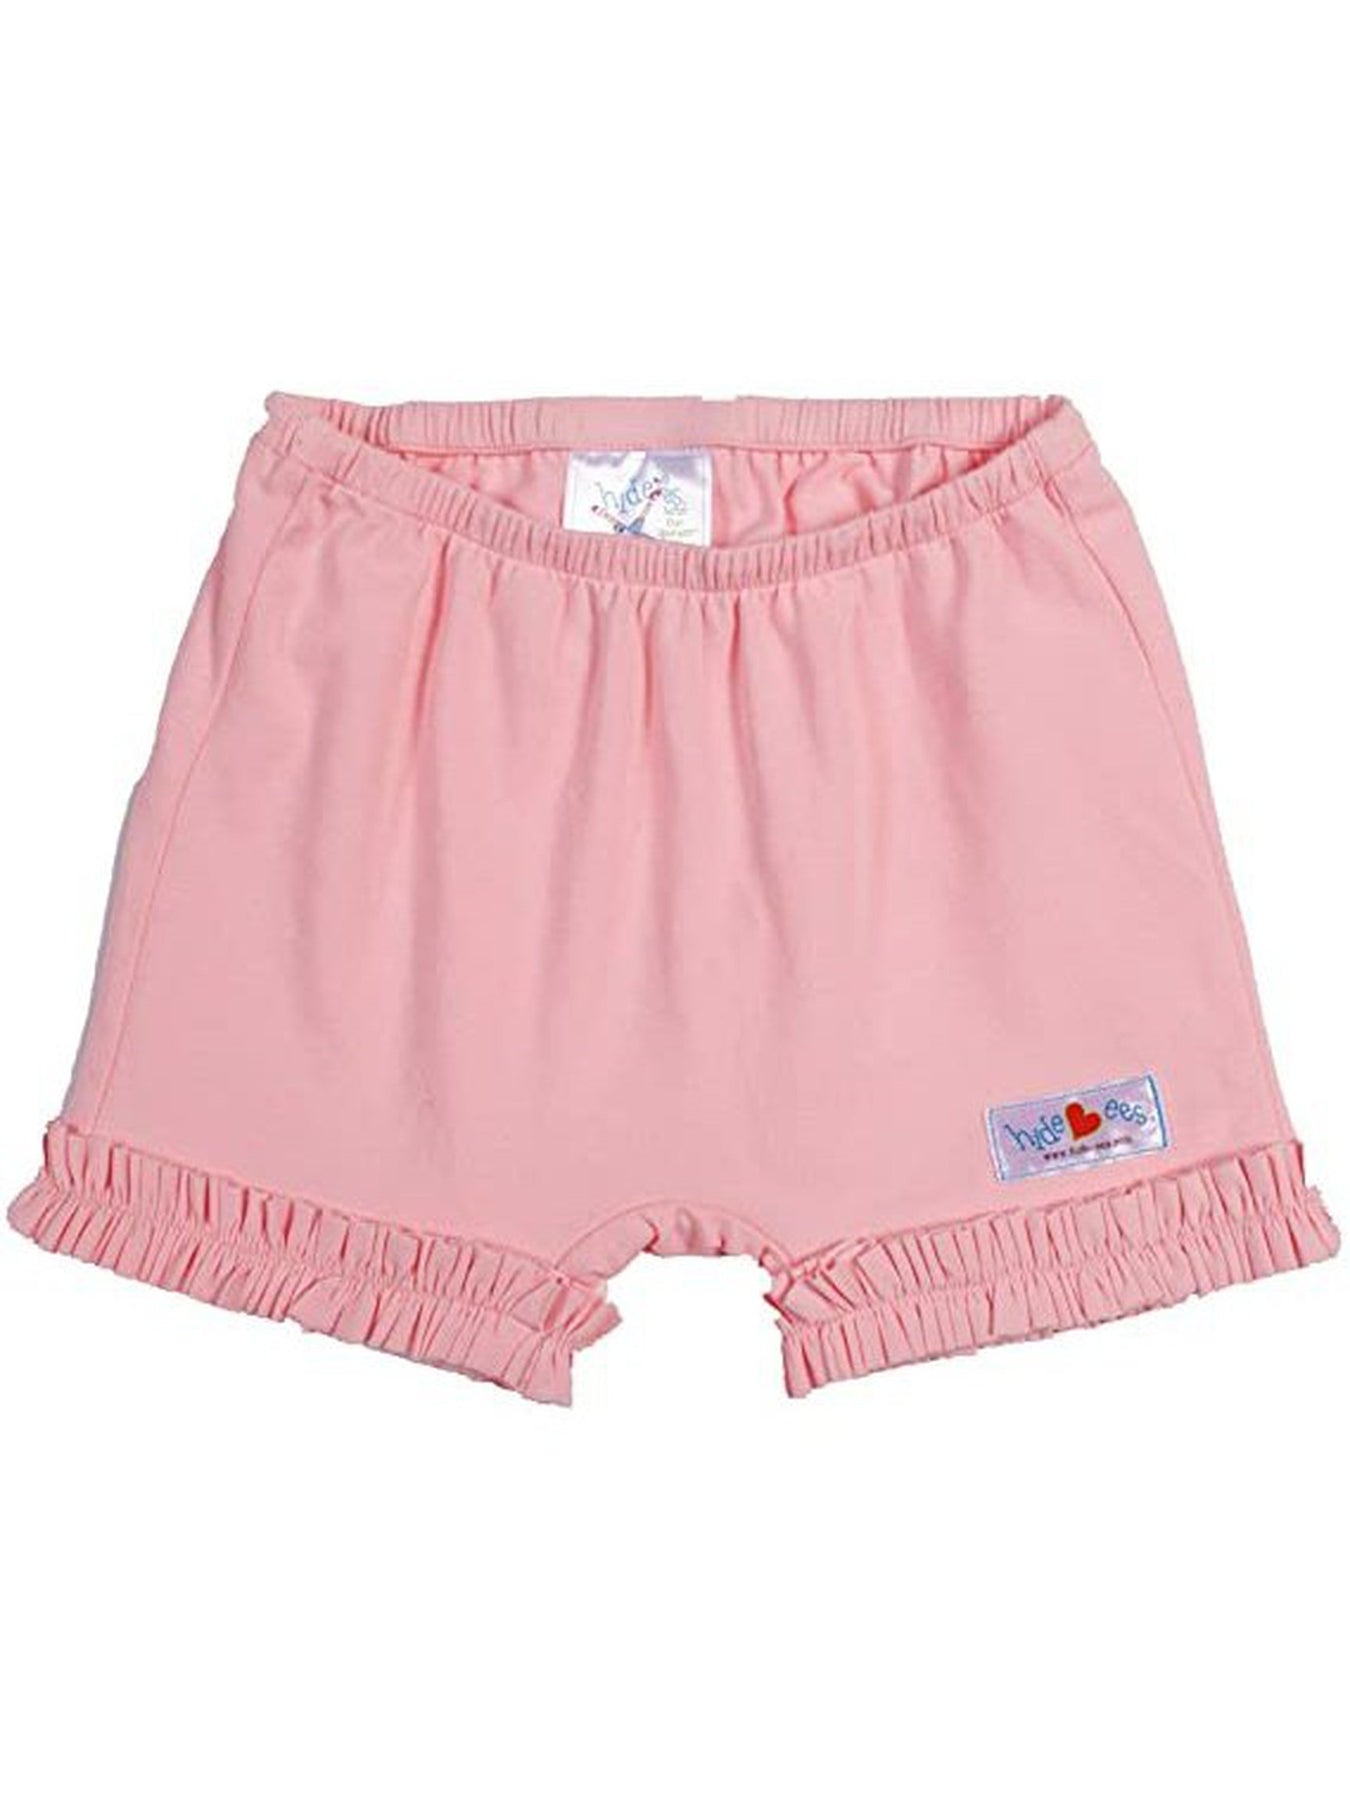 Hide-ees Modesty Shorts  Posh Tots Children's Boutique